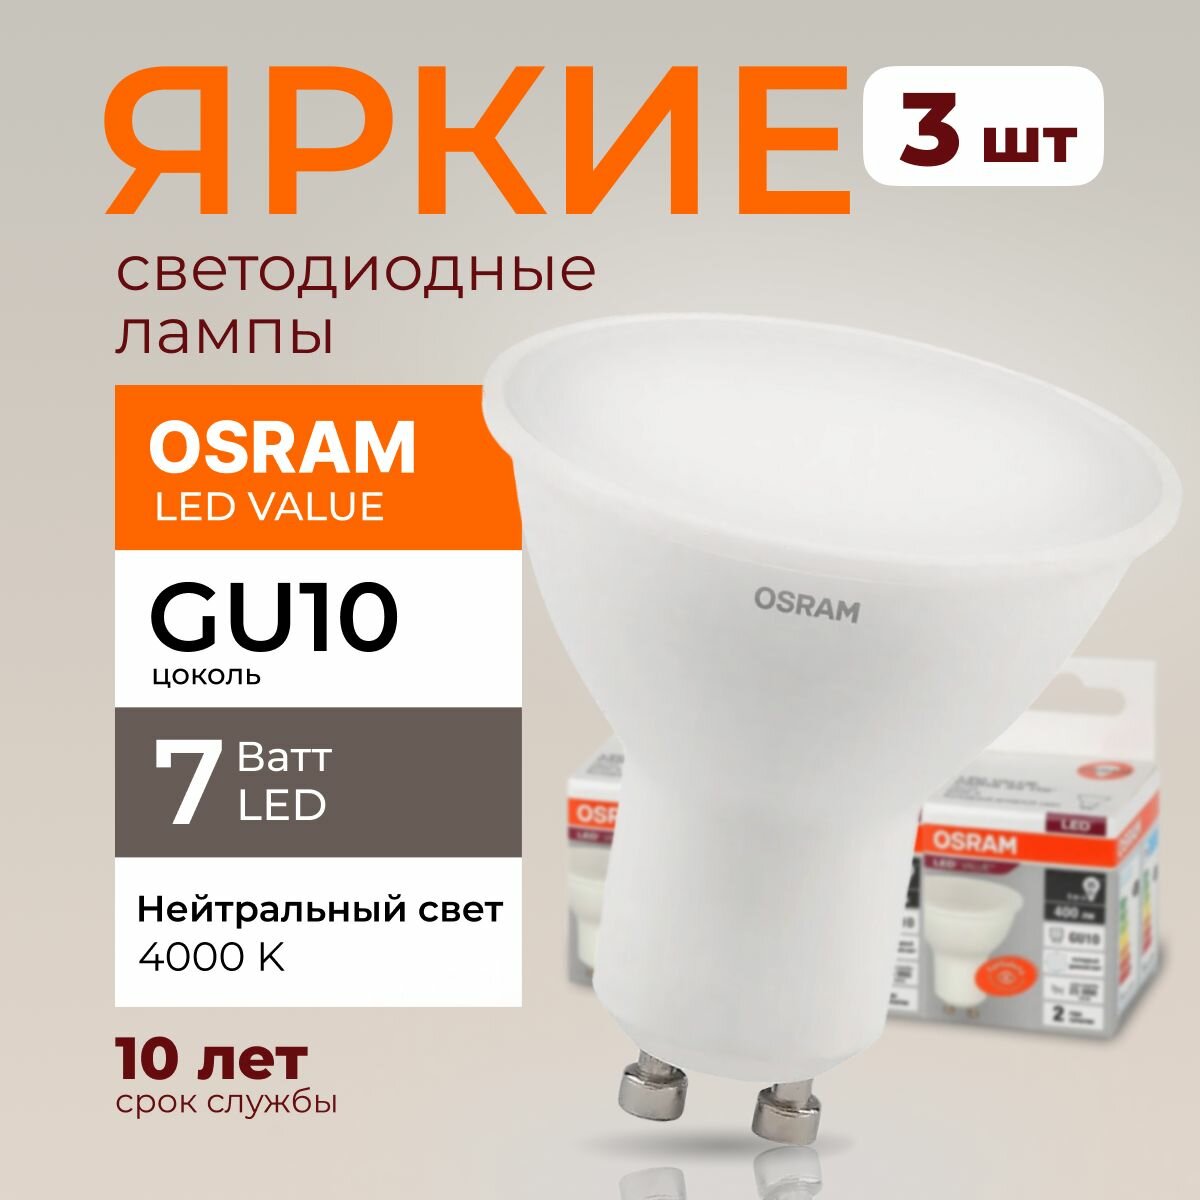 Светодиодная лампочка OSRAM GU10 7 Ватт 4000К нейтральный свет PAR16 спот 230V LED 840, 7W, 560lm, набор 3шт